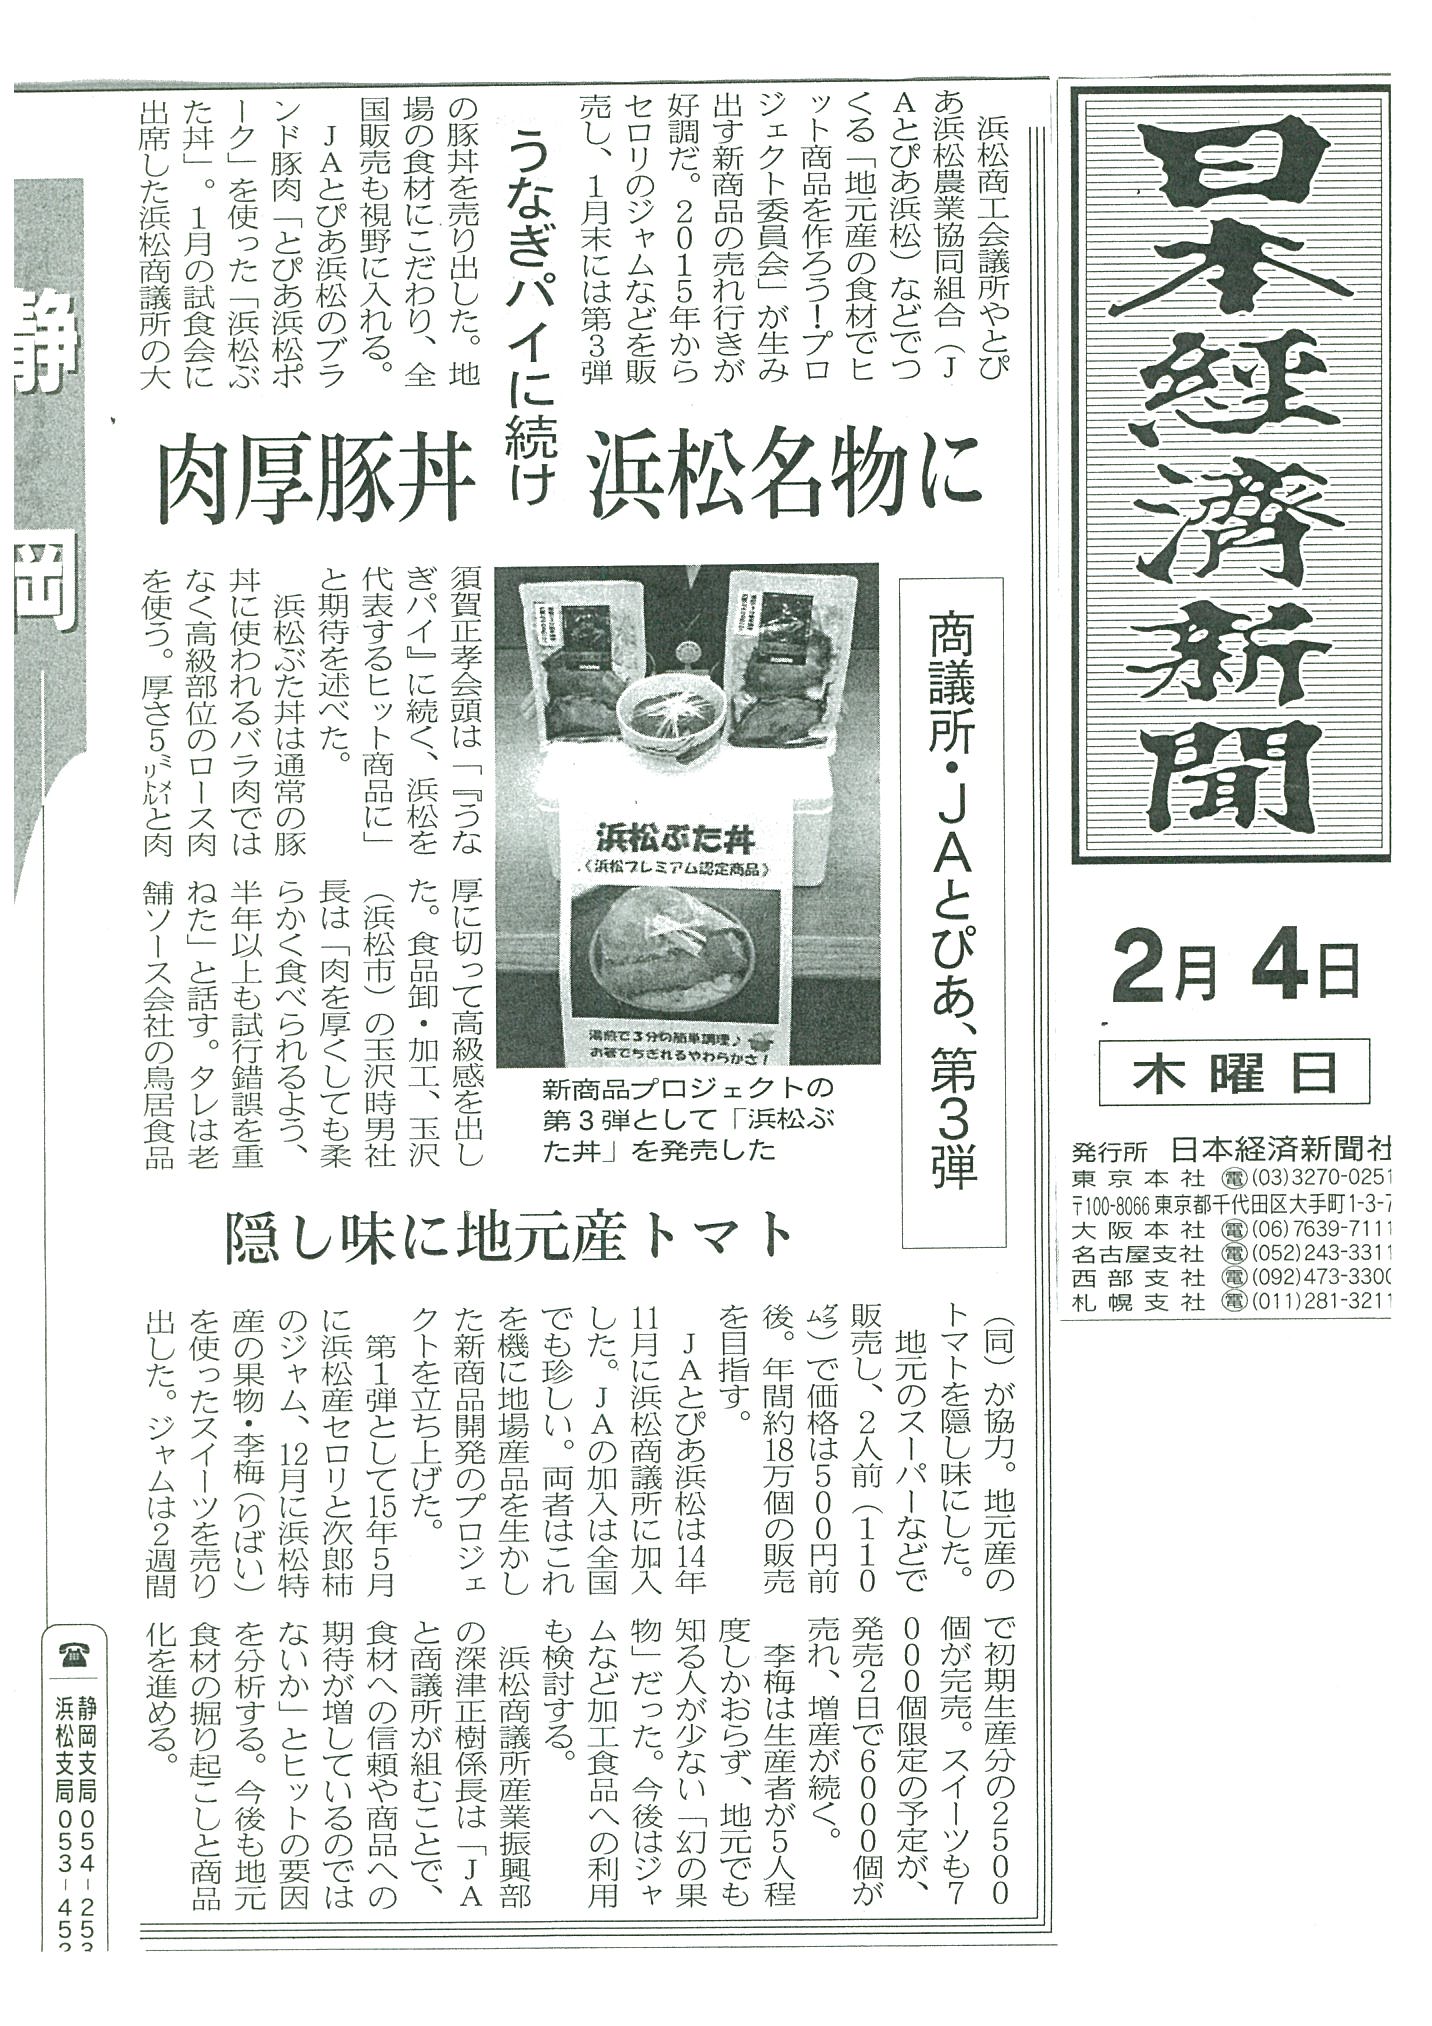 http://www.torii-sauce.jp/media/%E8%B1%9A%E4%B8%BC%E6%97%A5%E6%9C%AC%E7%B5%8C%E6%B8%88%E6%96%B0%E8%81%9E.jpg